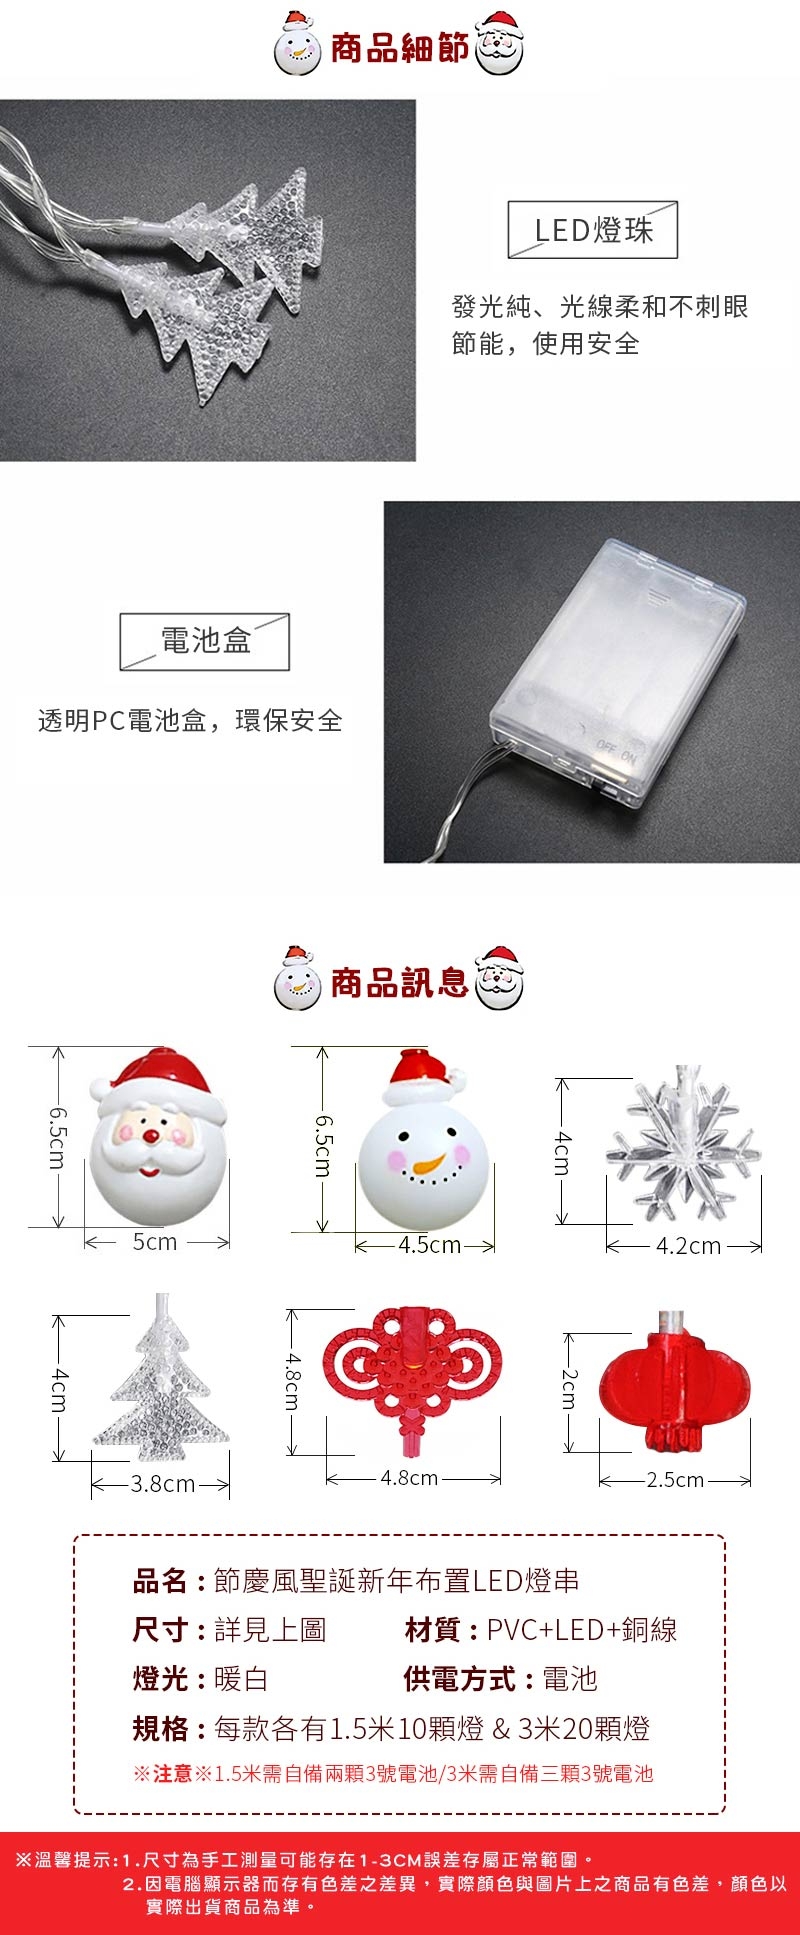 半島良品 1-5米節慶風聖誕新年布置LED燈串-2款/交換禮物/空間布置